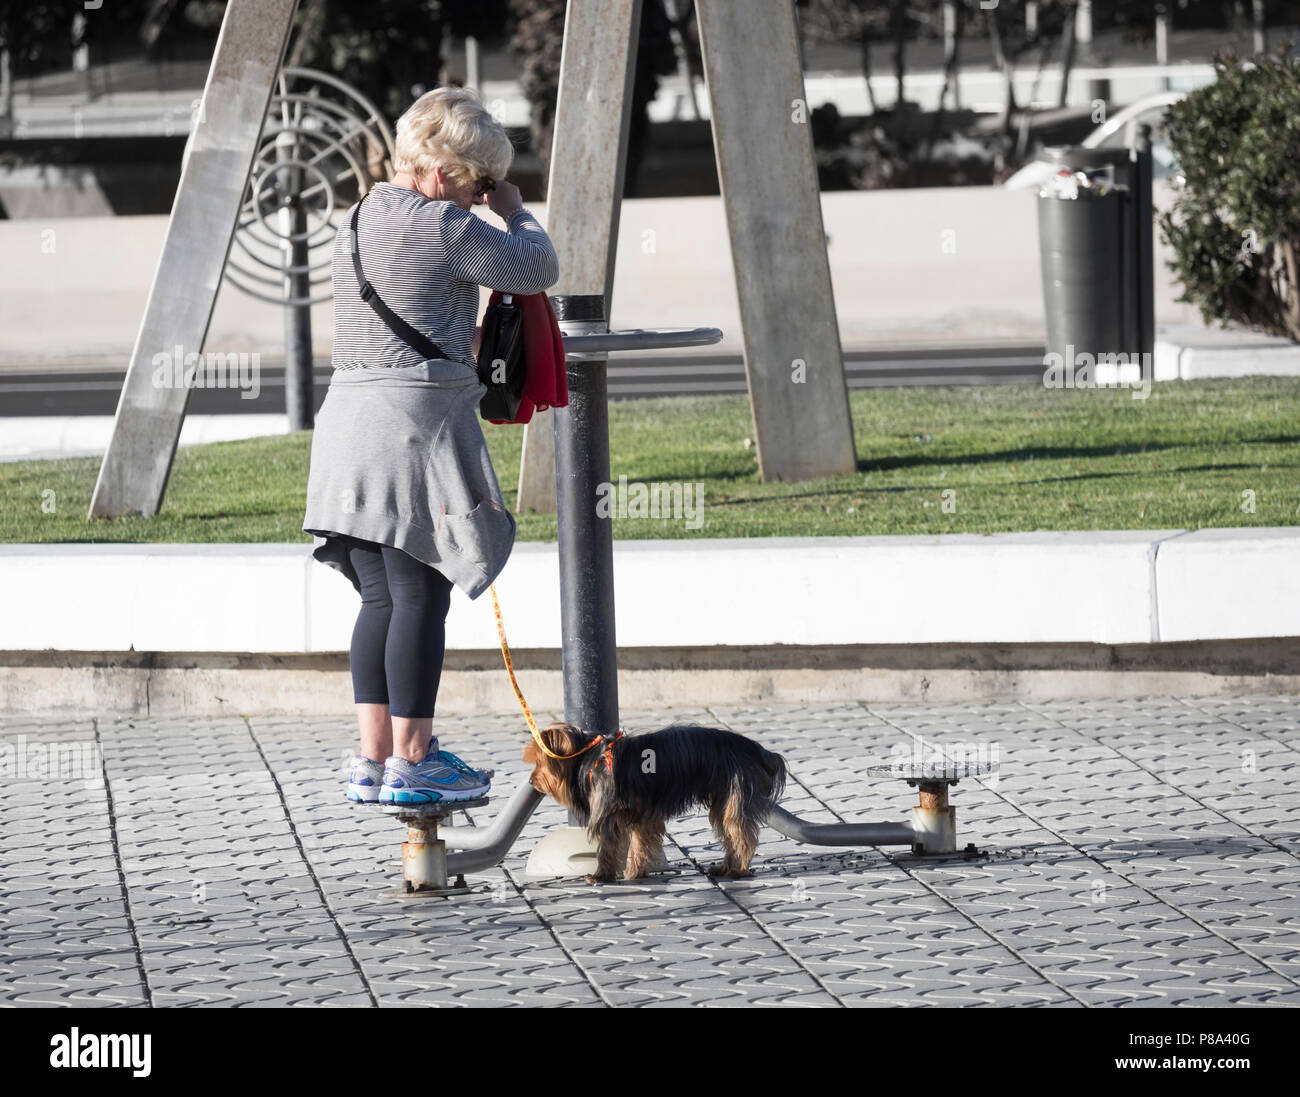 Ältere Frau zu Hund mit Bewegung im Freien Maschine auf city street in Spanien Stockfoto